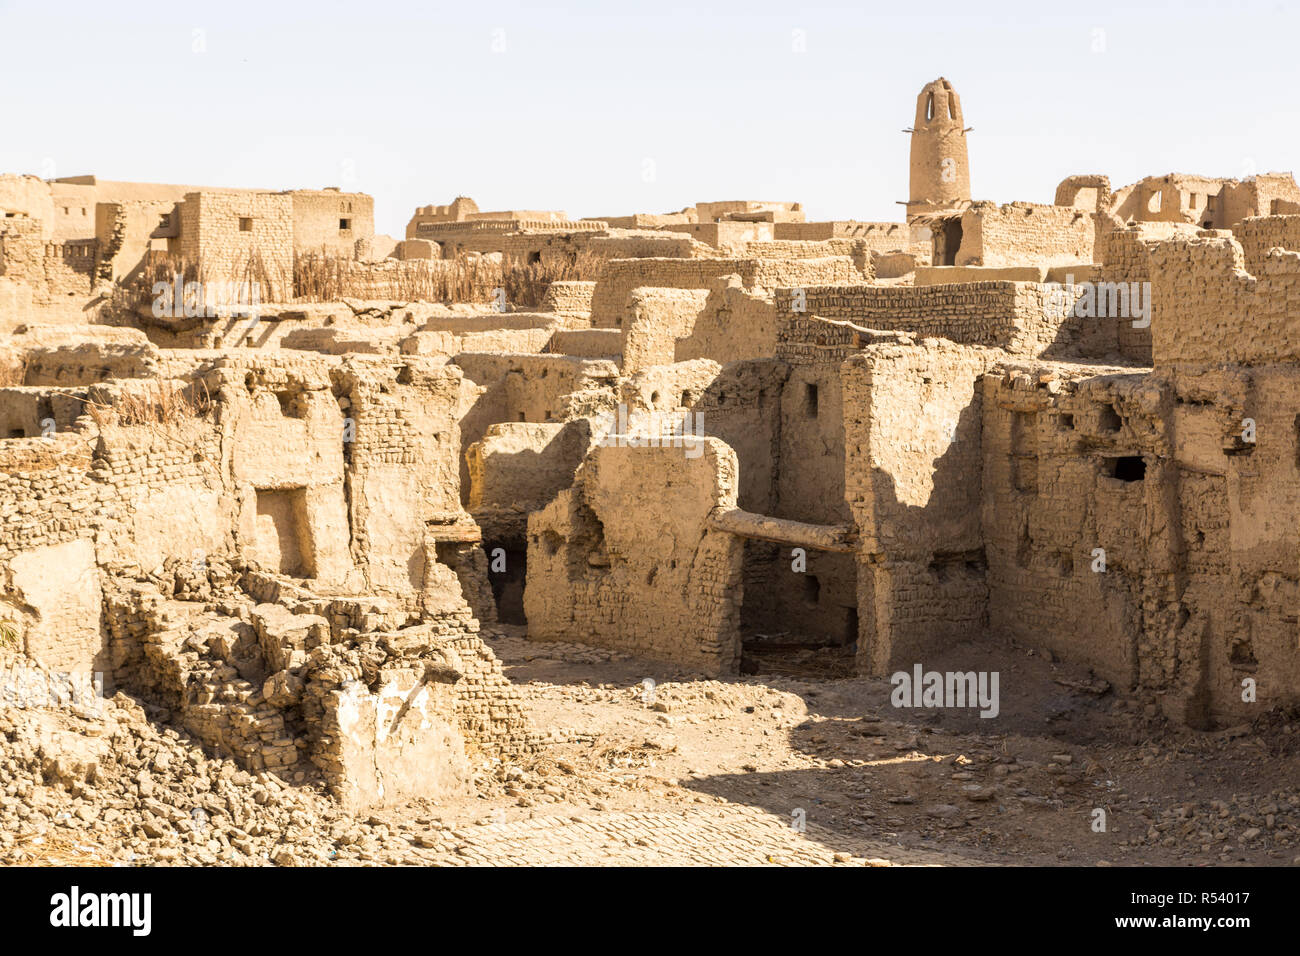 Ruines de l'ancienne vieille ville du Moyen-Orient arabe construite de briques de boue, ancienne mosquée avec minaret. Al Qasr, Dakhla Oasis, désert de l'Ouest, Nouvelle Vallée, de l'Égypte. Banque D'Images